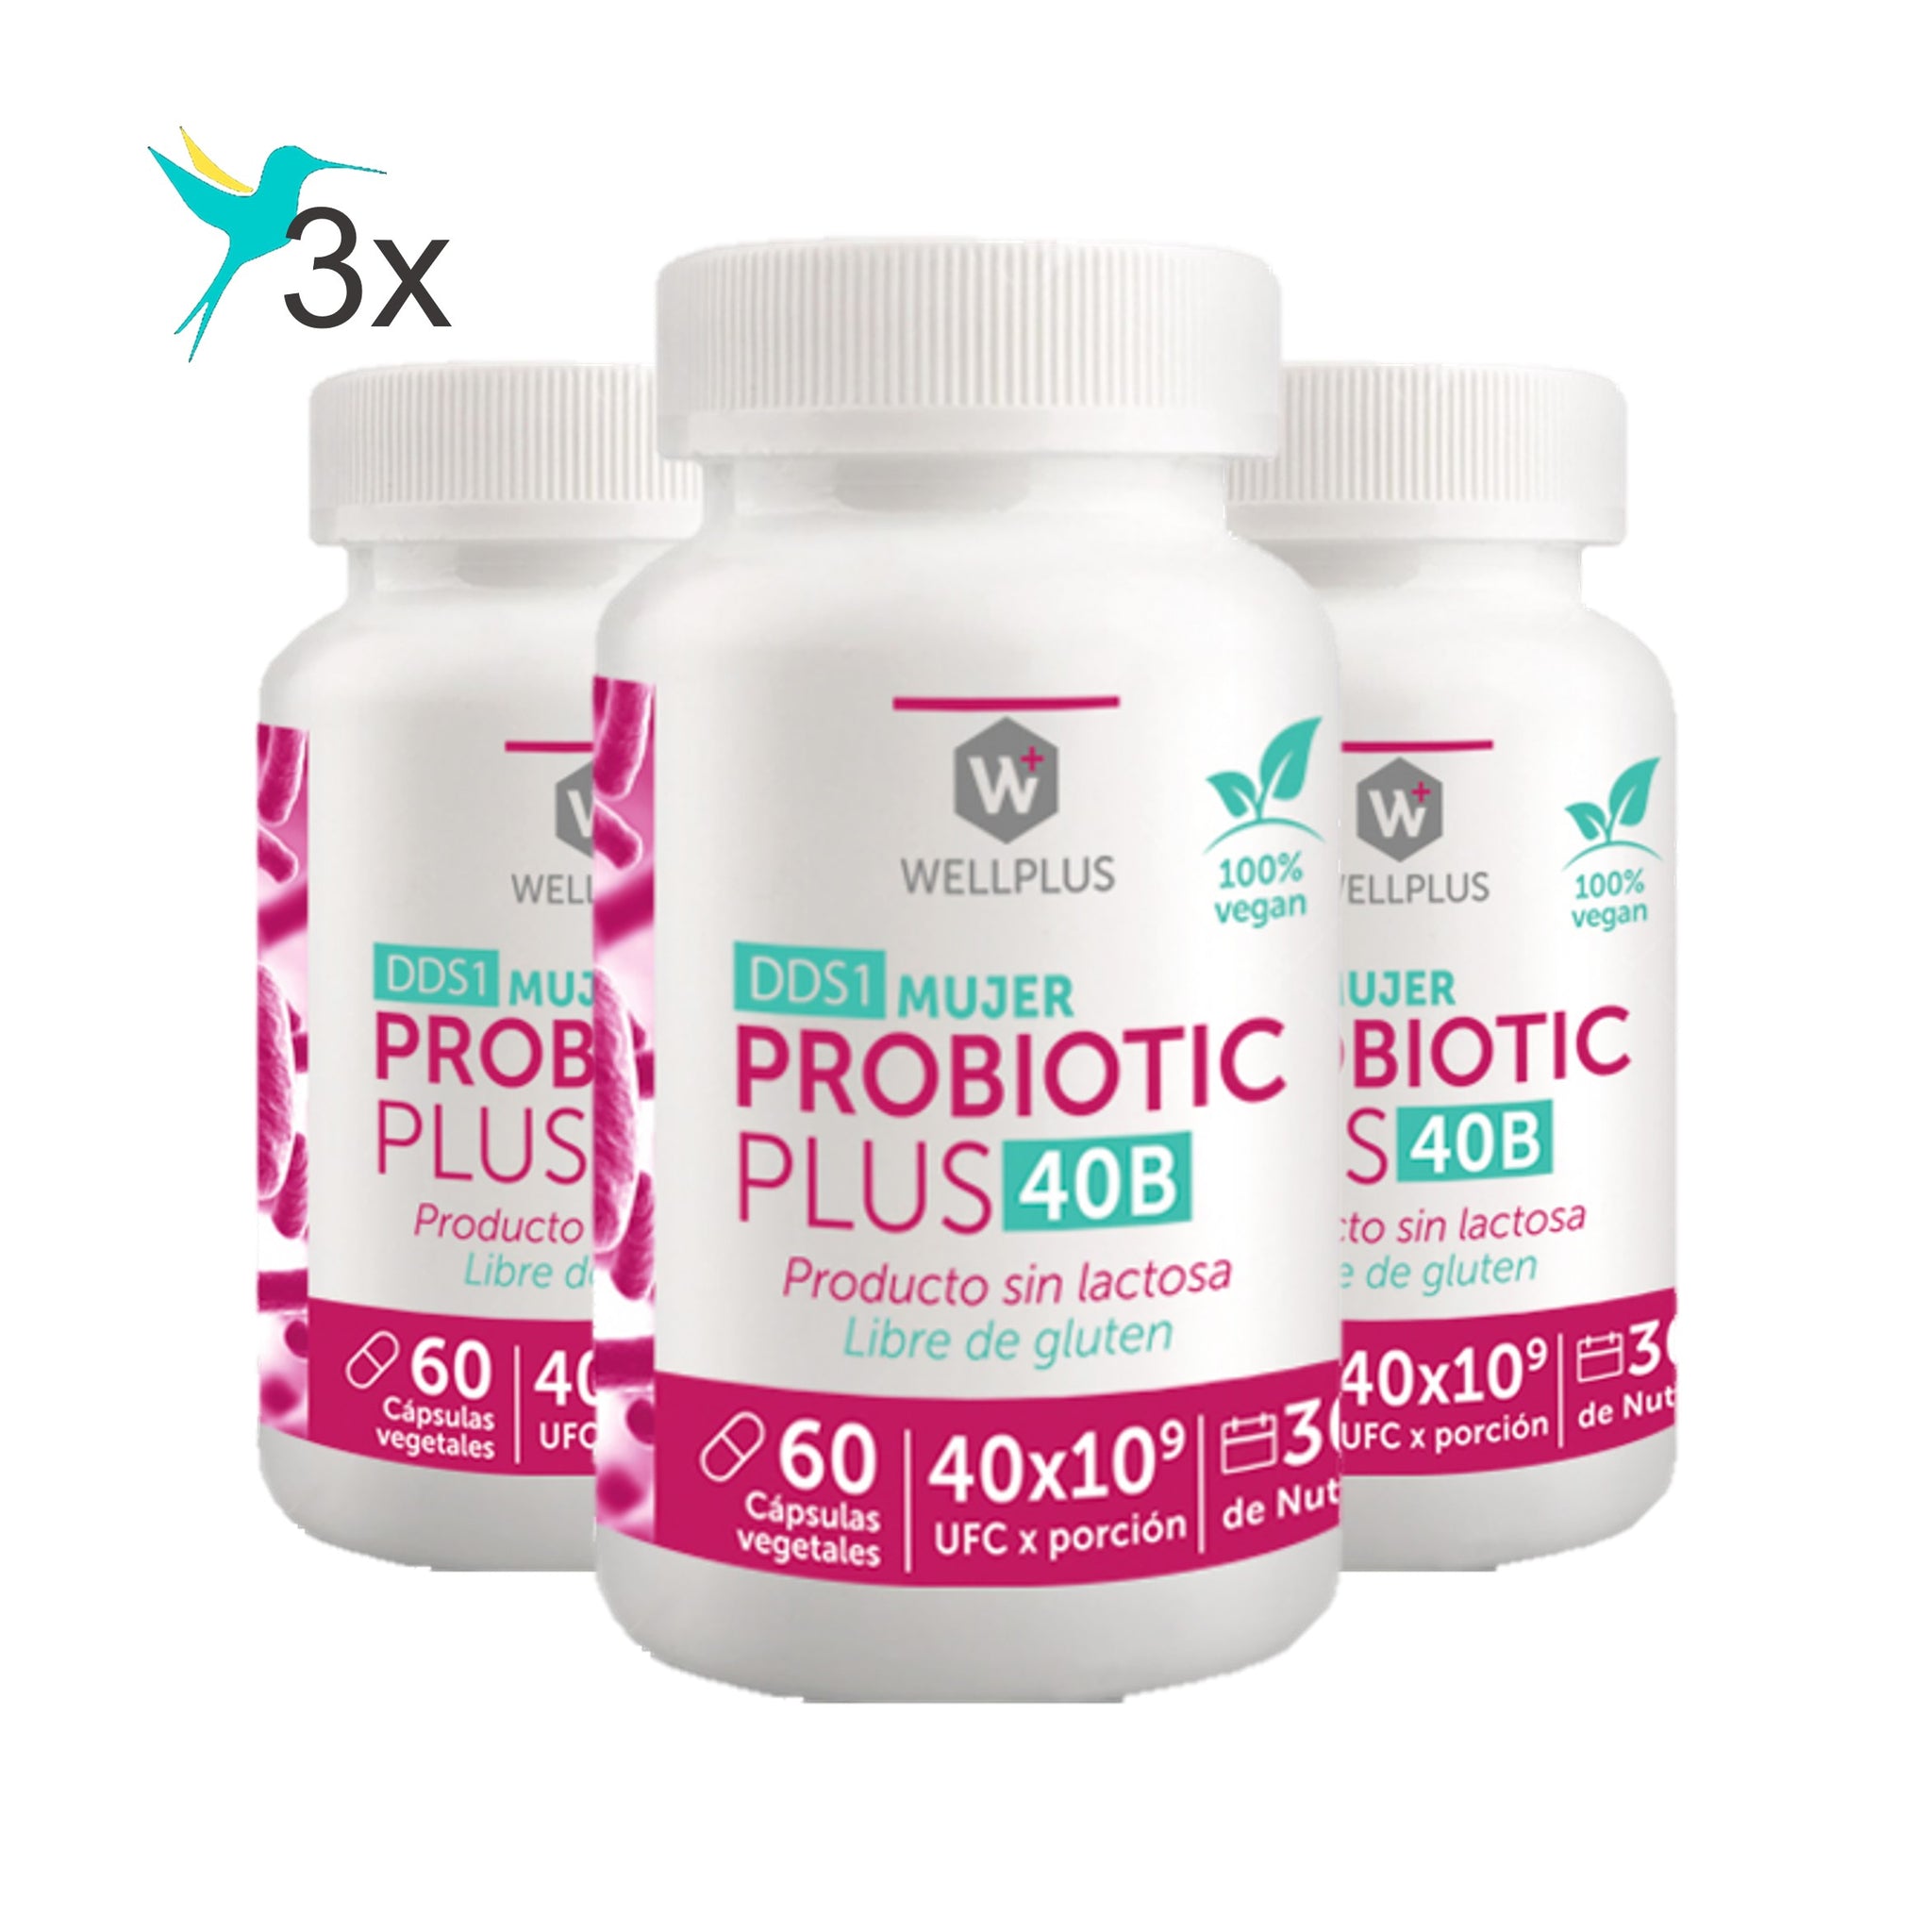 3 x Probiotic Plus Mujer 40 B, 3 x 60 capsulas, wellplus